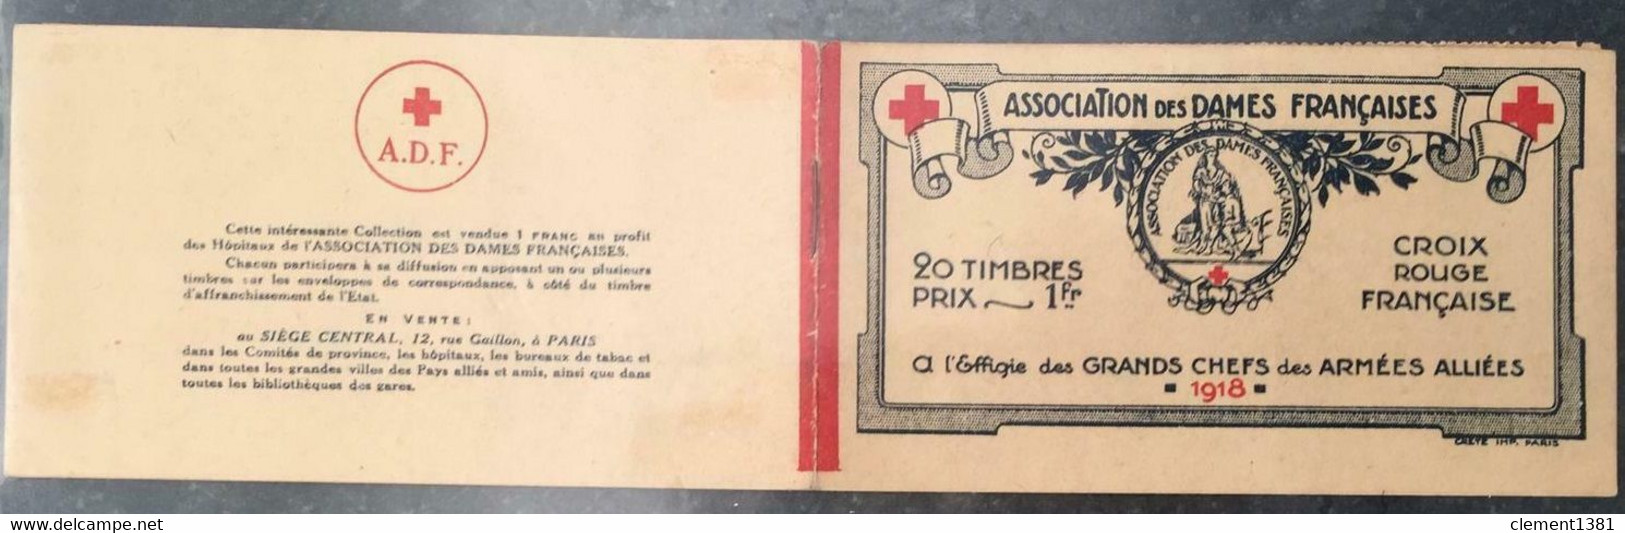 FRANCE MILITARIA VIGNETTES CROIX ROUGE 1914/18 CARNET ASSOCIATION DES DAMES FRANÇAISES 20 TIMBRES ERINNOPHILIE - Rotes Kreuz